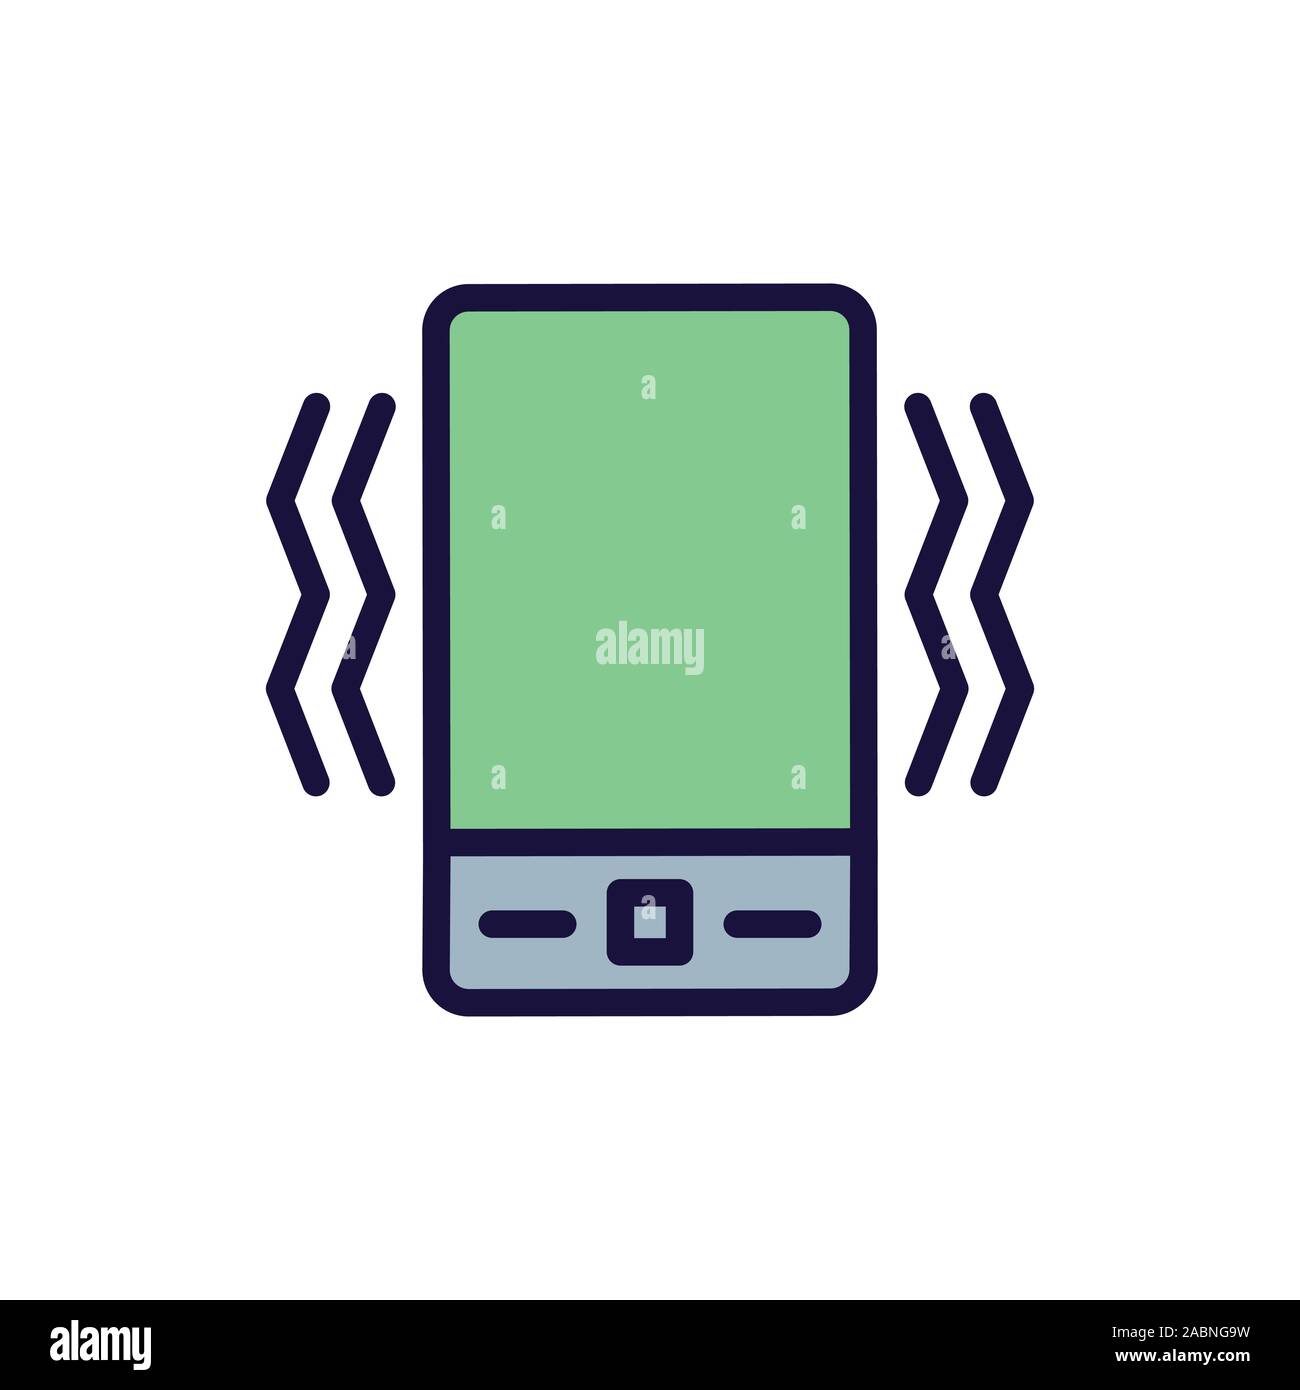 Il suono del telefono spento o sull'icona w che mostra le linee di suono  Immagine e Vettoriale - Alamy